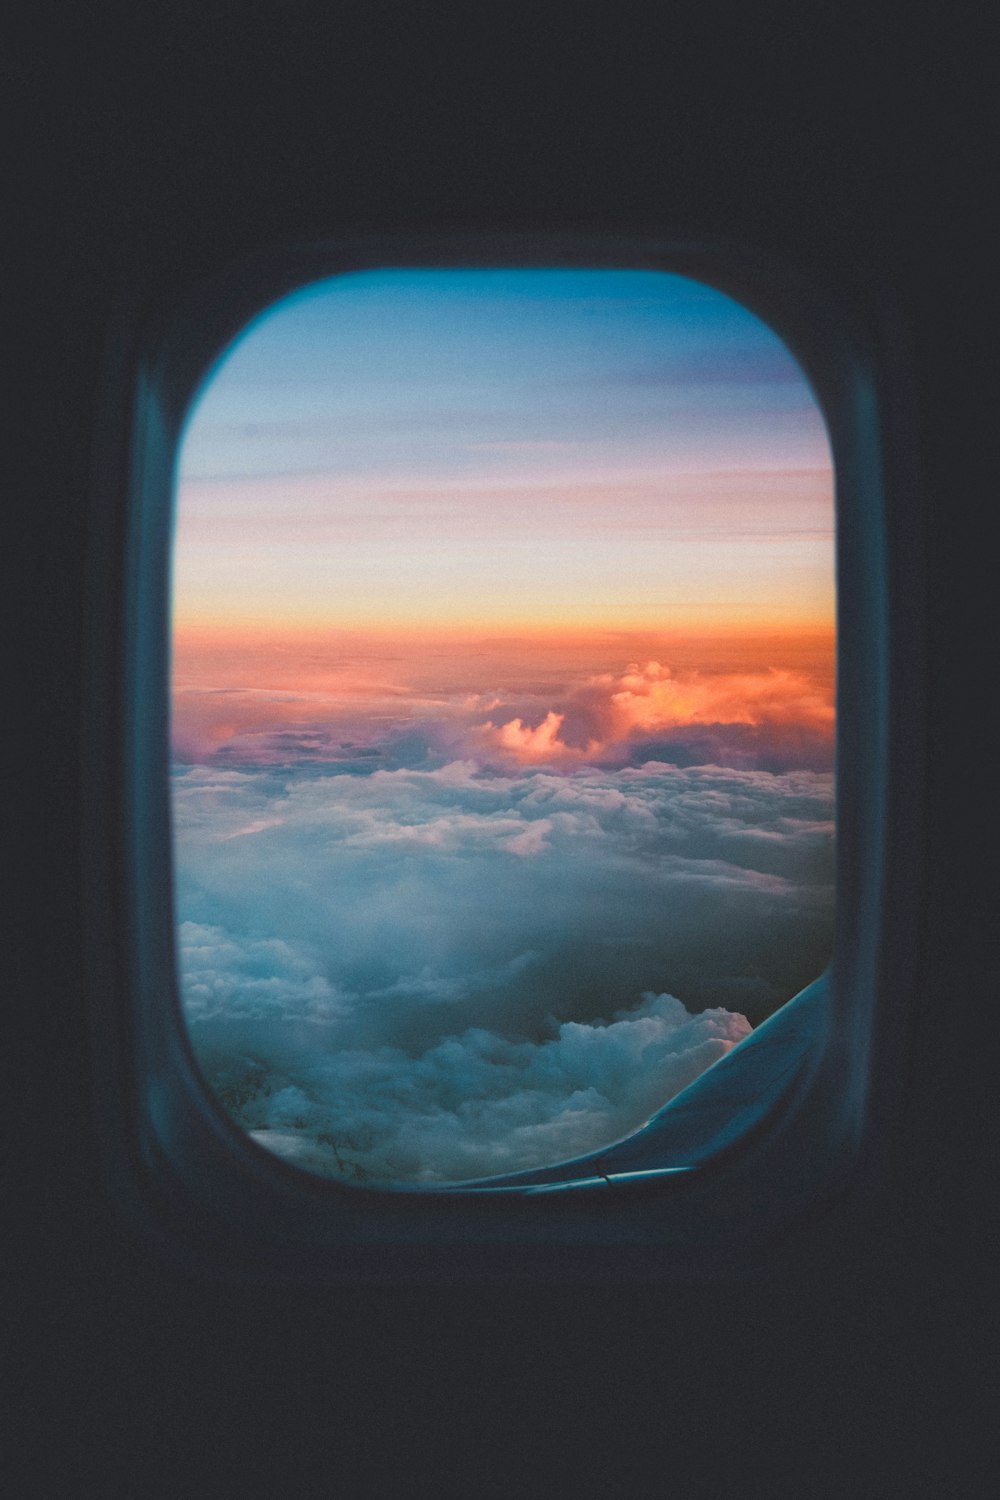 janela do avião com vista para o mar de nuvens